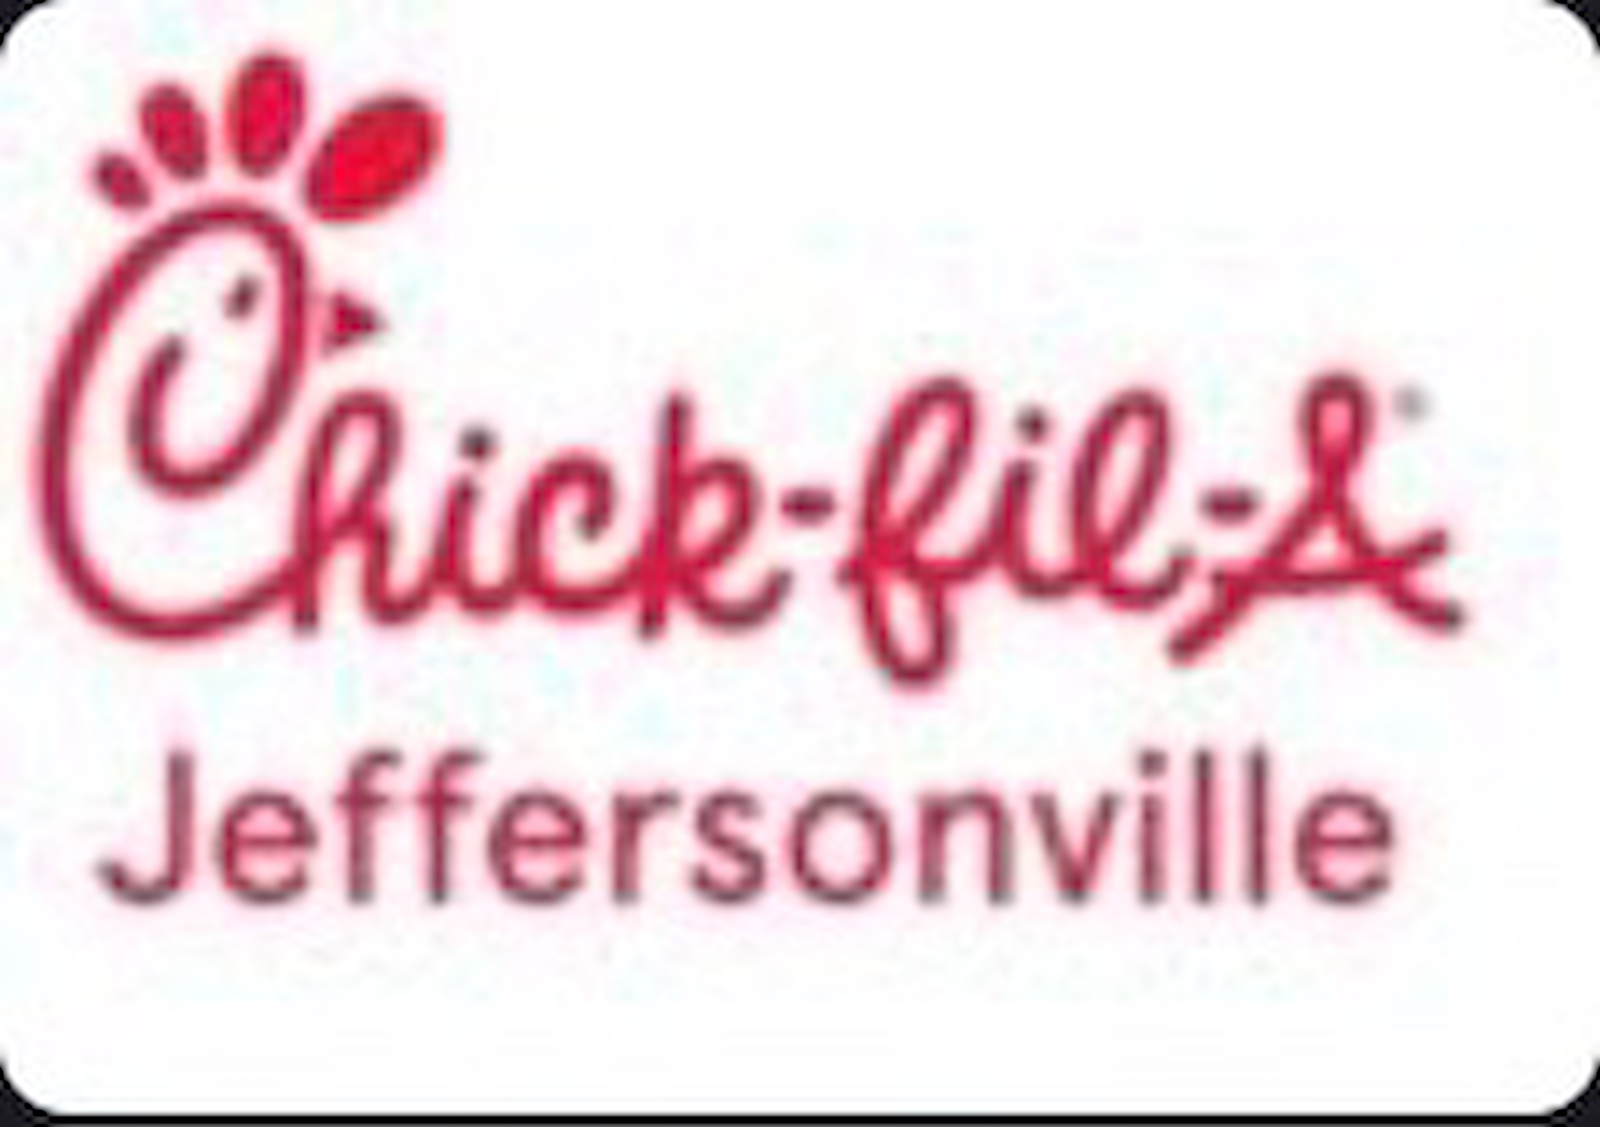 Chick-fil-A Jeffersonville